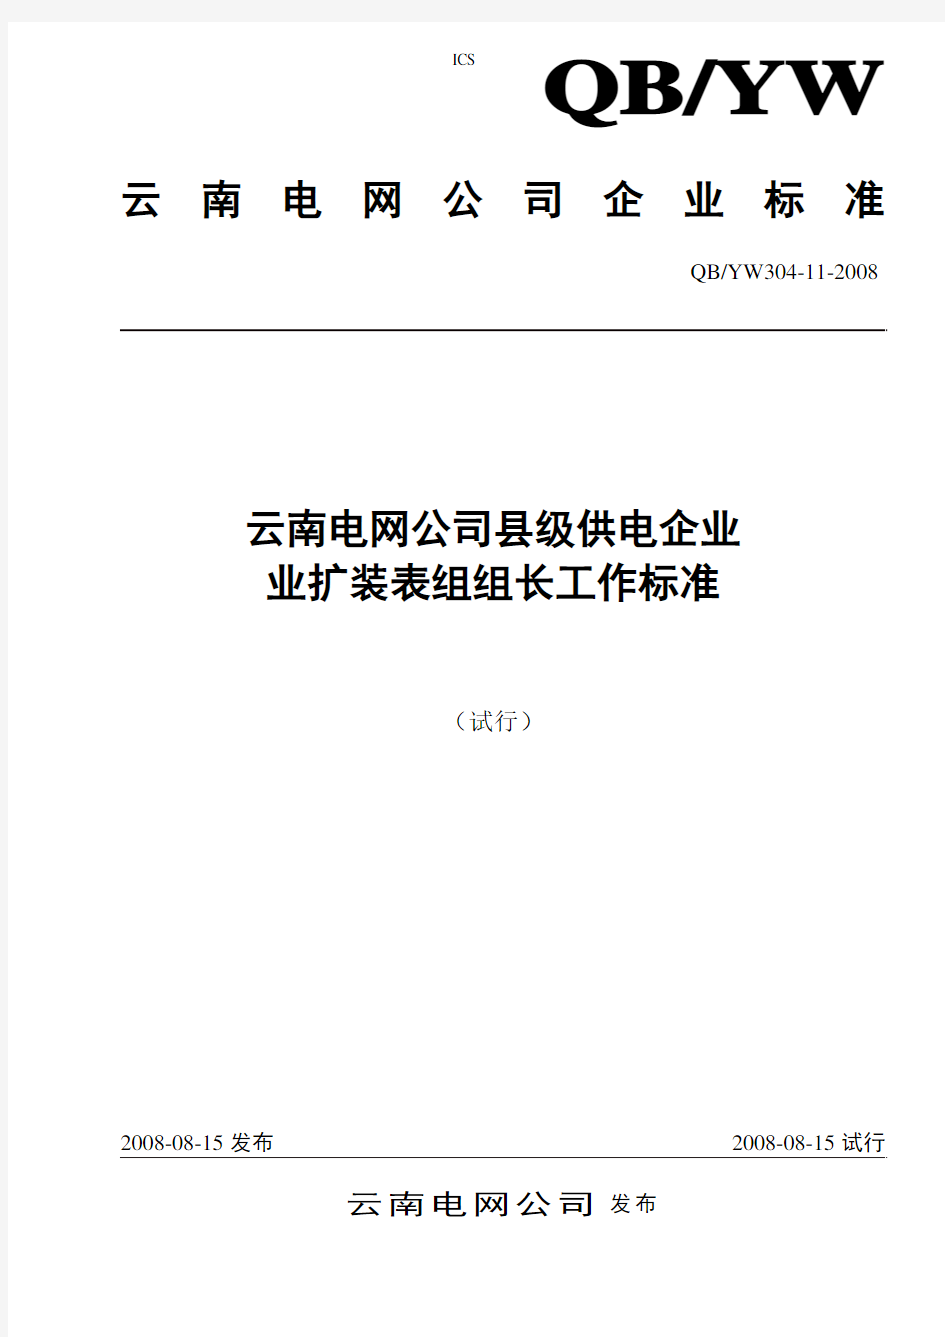 304-11云南电网公司县级供电企业业扩装表组组长工作标准(试行)